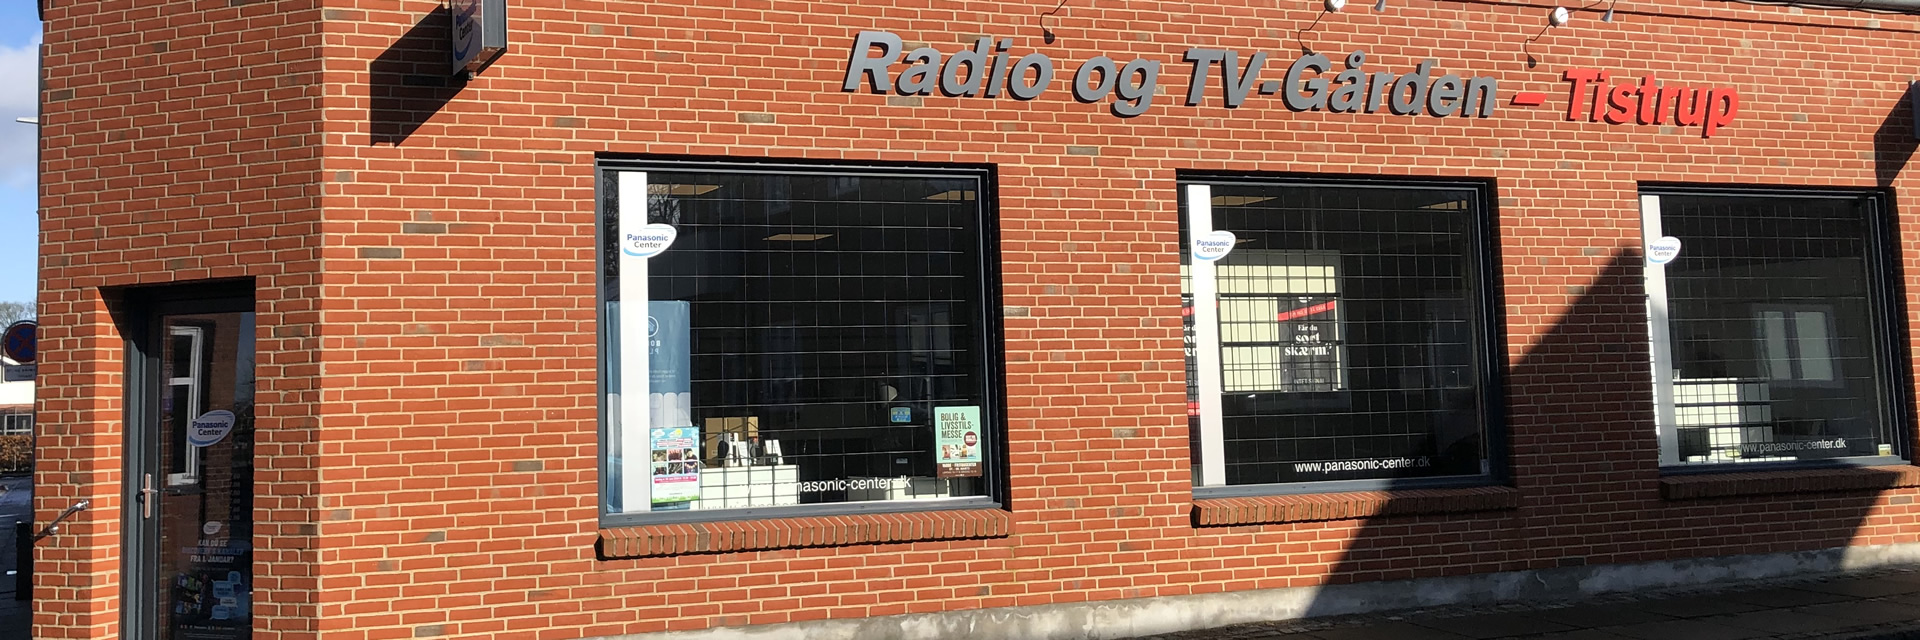 Radio og TV-Gården